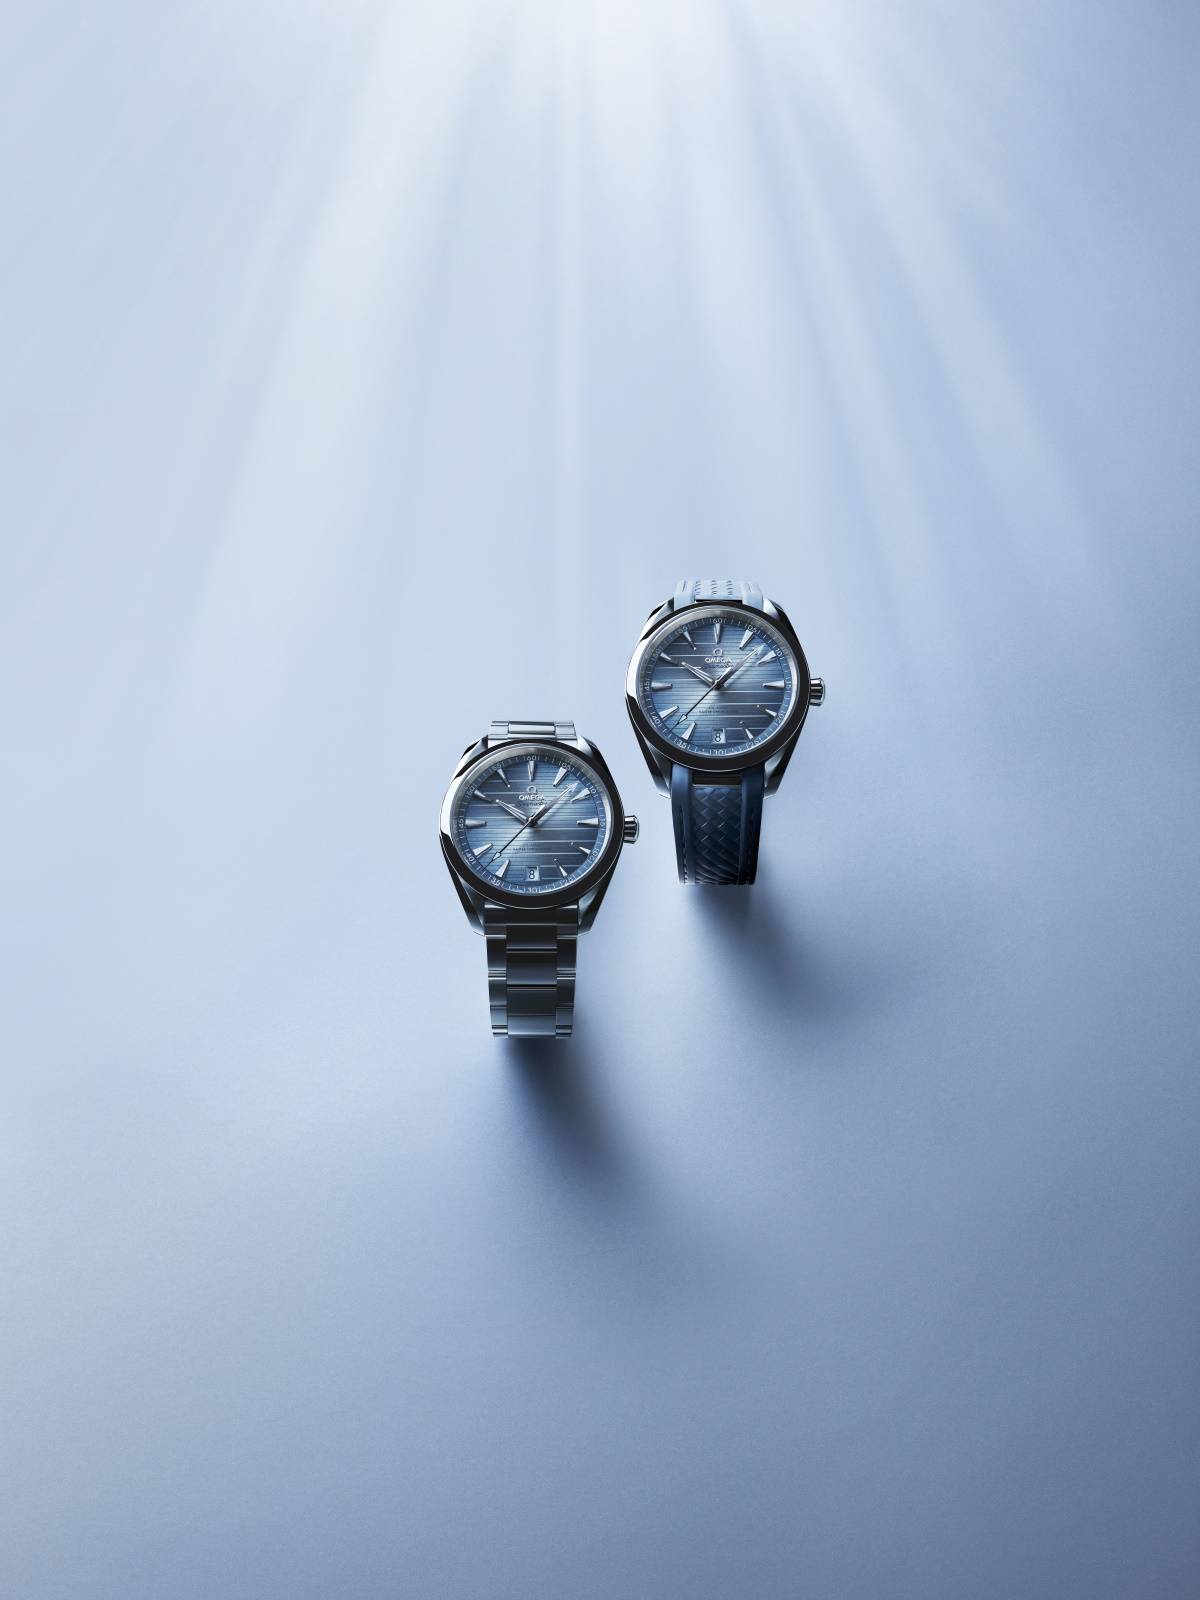 Jubileuszowa kolekcja Seamaster marki Omega. Z okazji 75-lecia powstania kultowej linii zegarków Seamaster, Omega przedstawiła kolekcję jedenastu zegarków w kolorze Summer Blue. Z marką świętował George Clooney. Seamaster Aqua Terra.